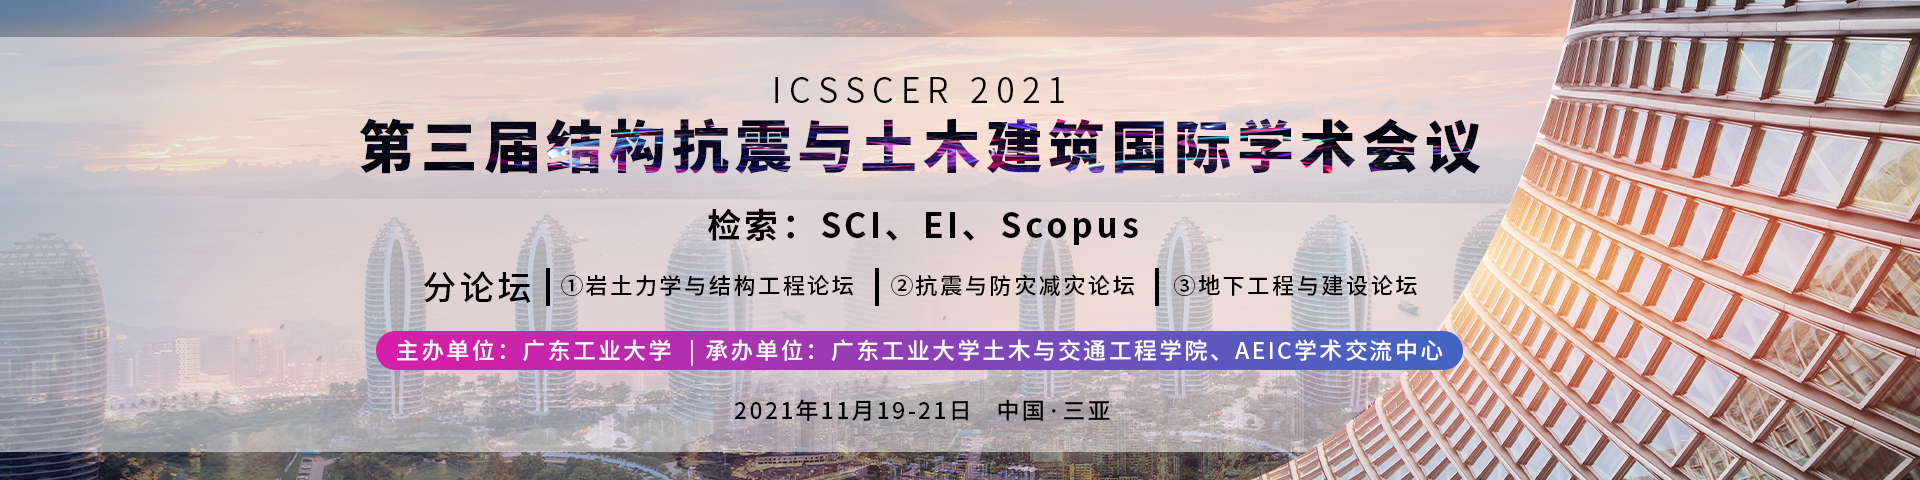 11月三亚-ICSSCER 2021-banner中-何霞丽-20210702.jpg